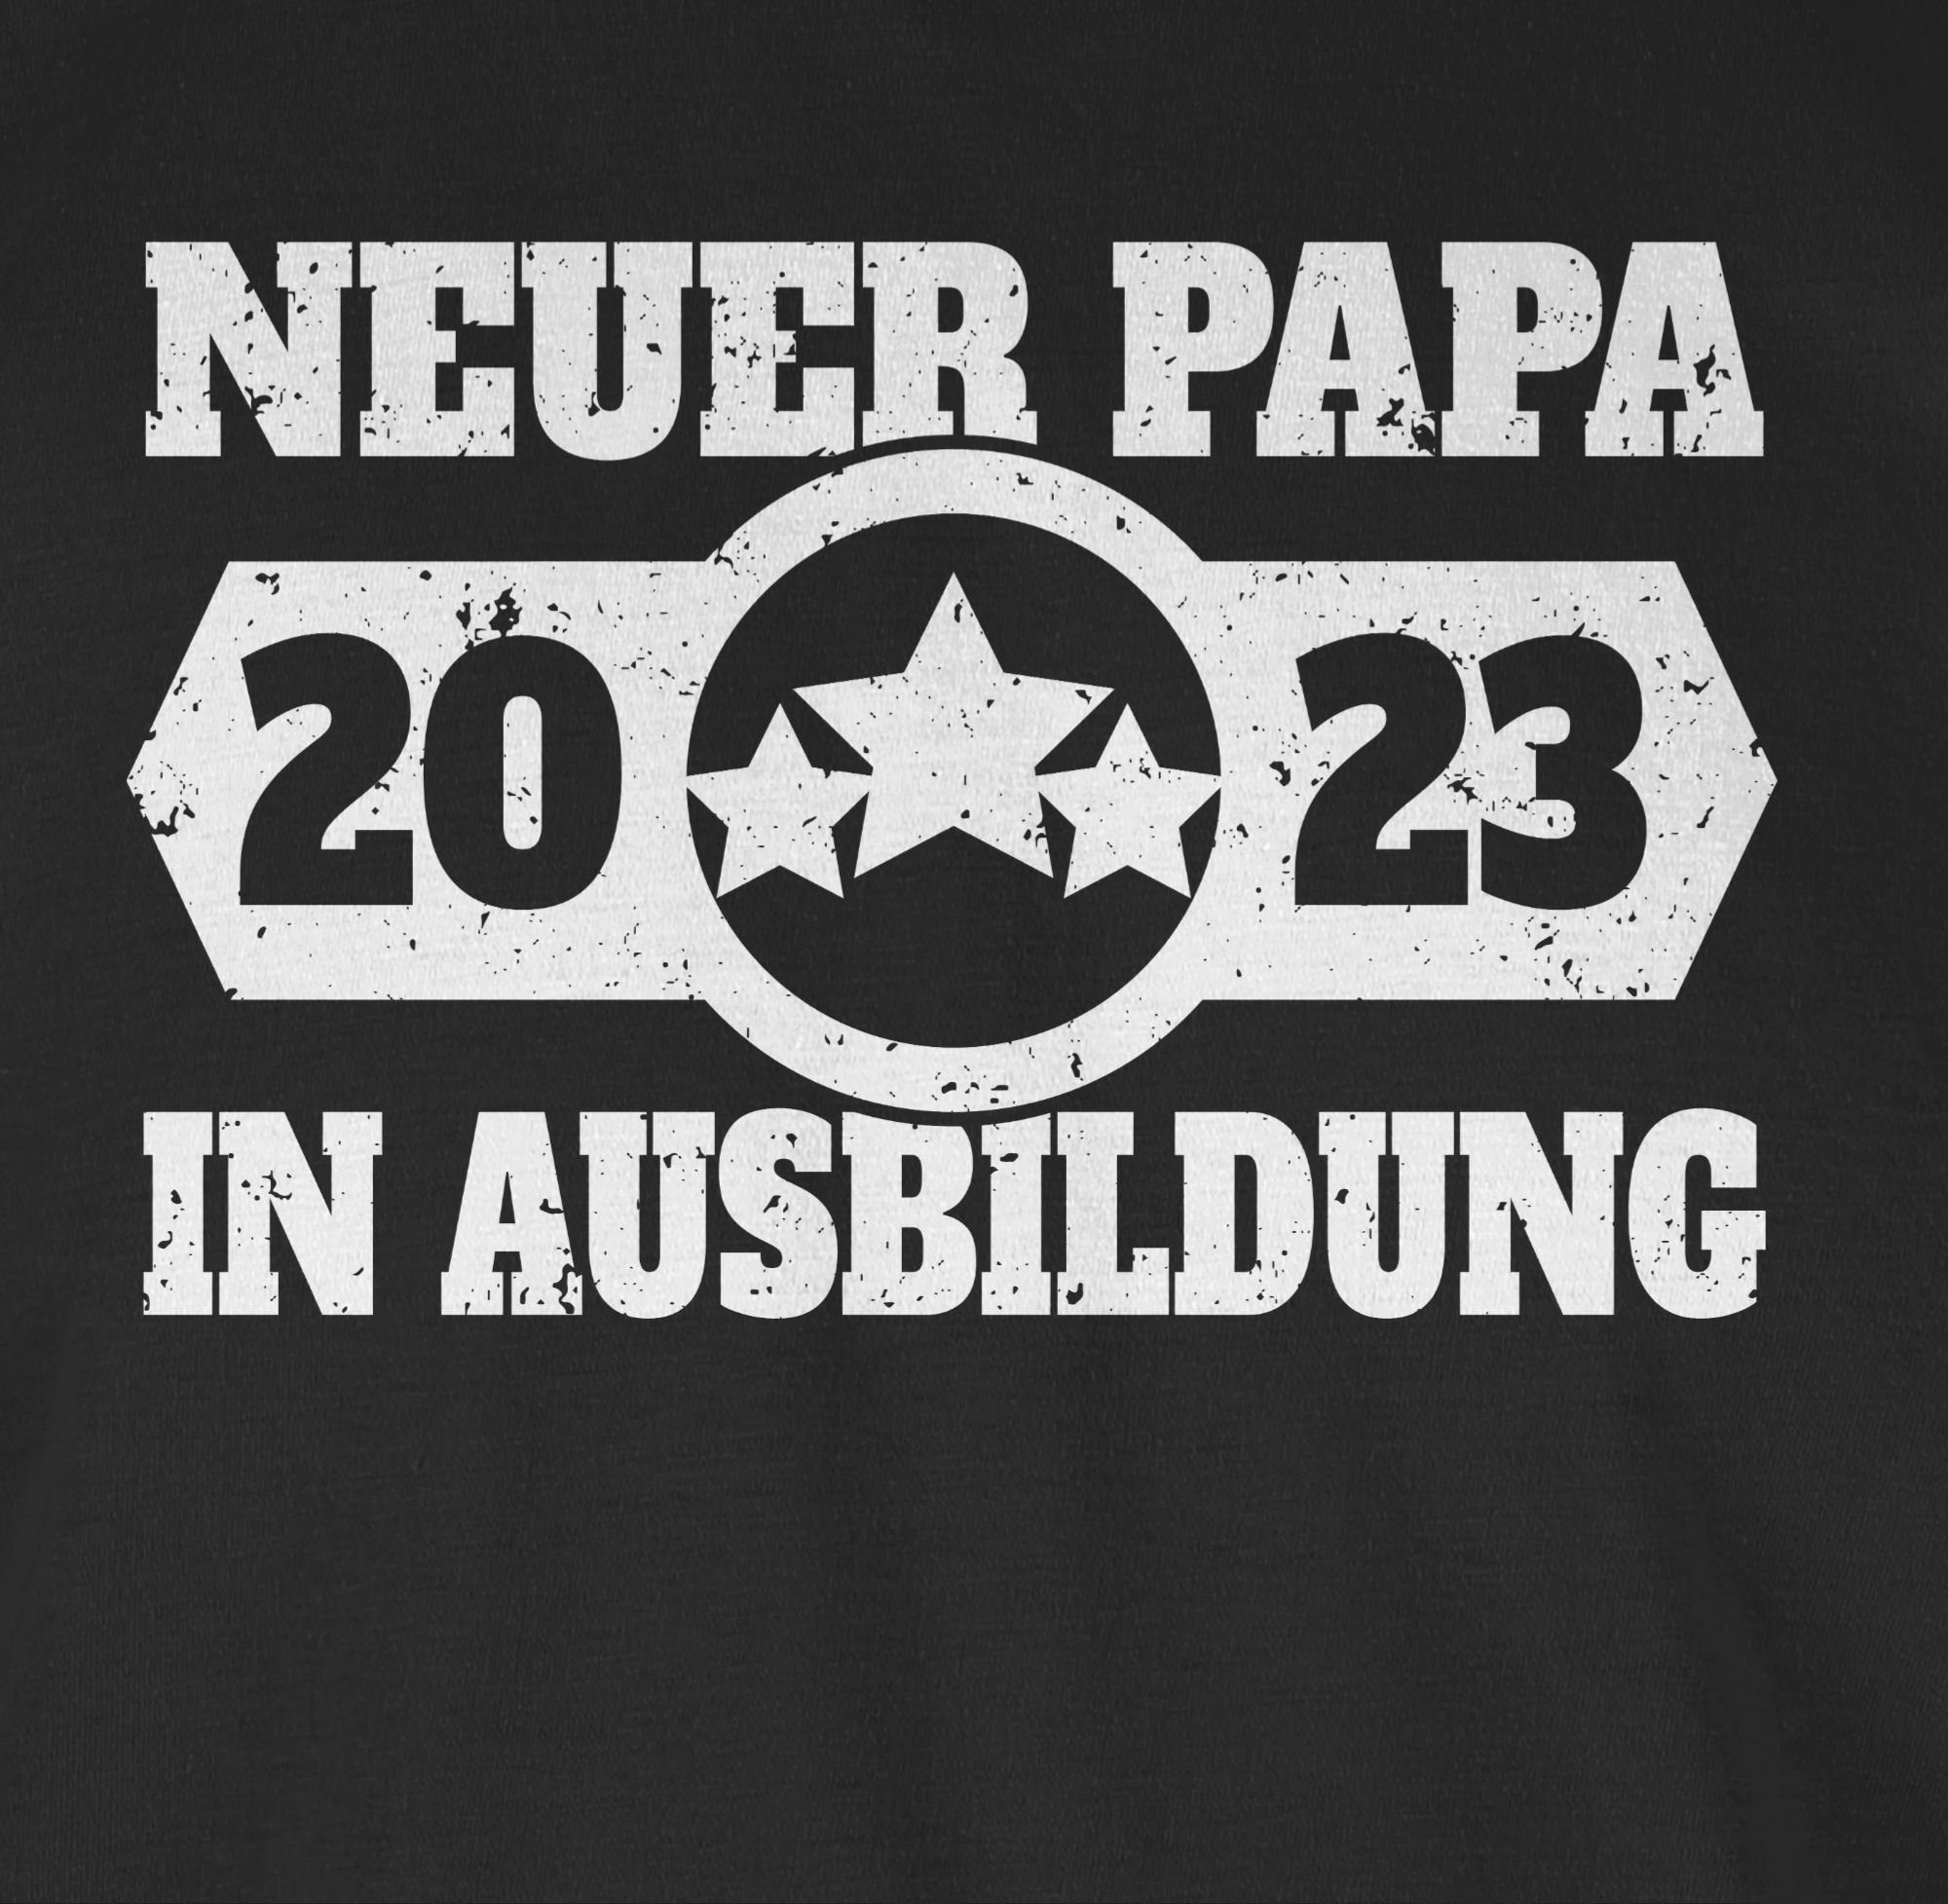 Geschenk 2023 in Vatertag Schwarz - T-Shirt Neuer Shirtracer Ausbildung für Papa Papa 02 weiß